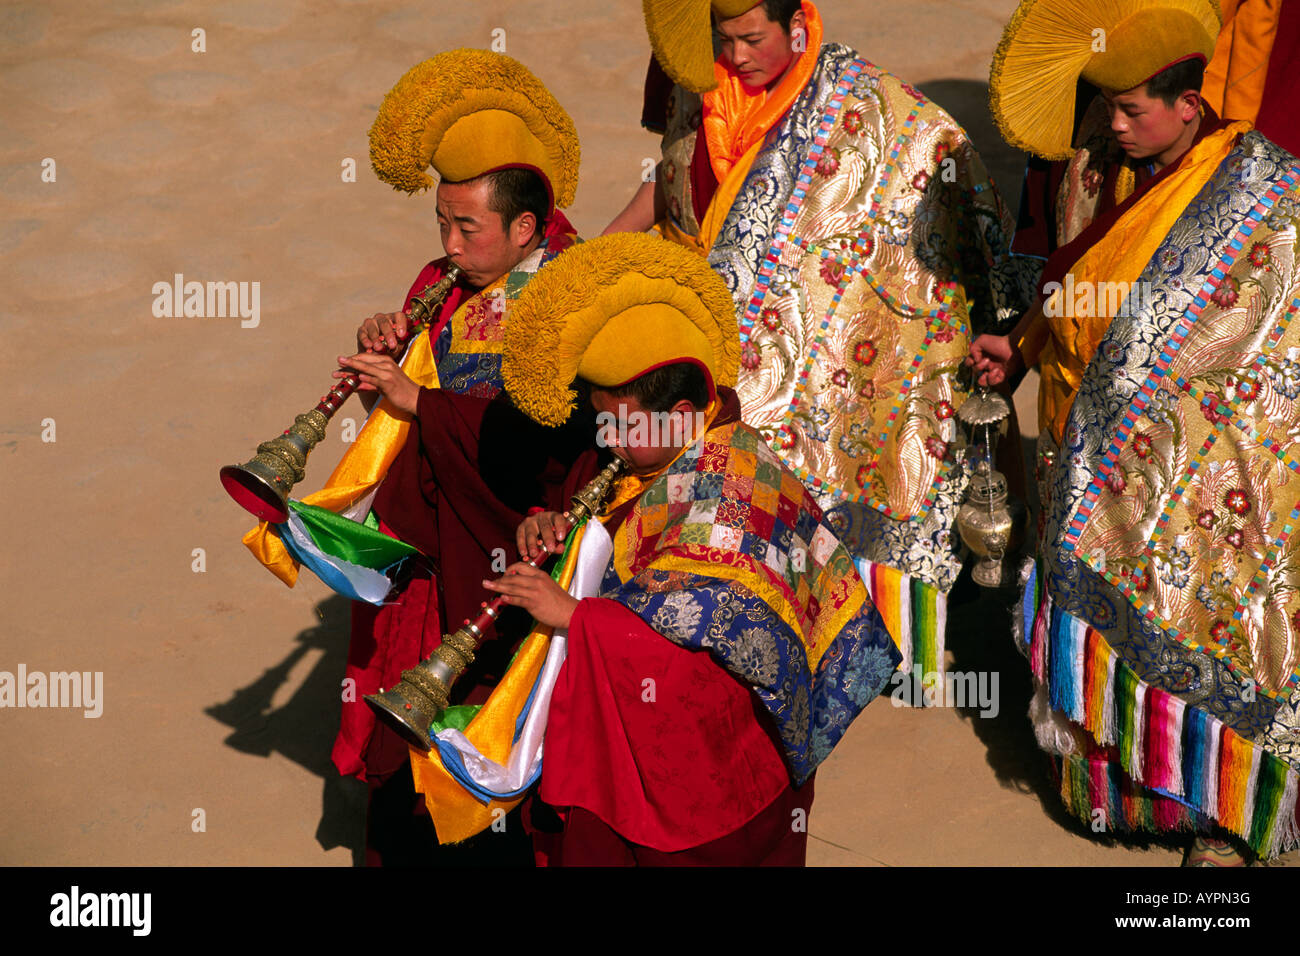 Chine, Tibet, province de Qinghai, Tongren (Repkong), monastère de Wutun si, jour de l'an, moines tibétains jouant de la trompette traditionnelle Banque D'Images